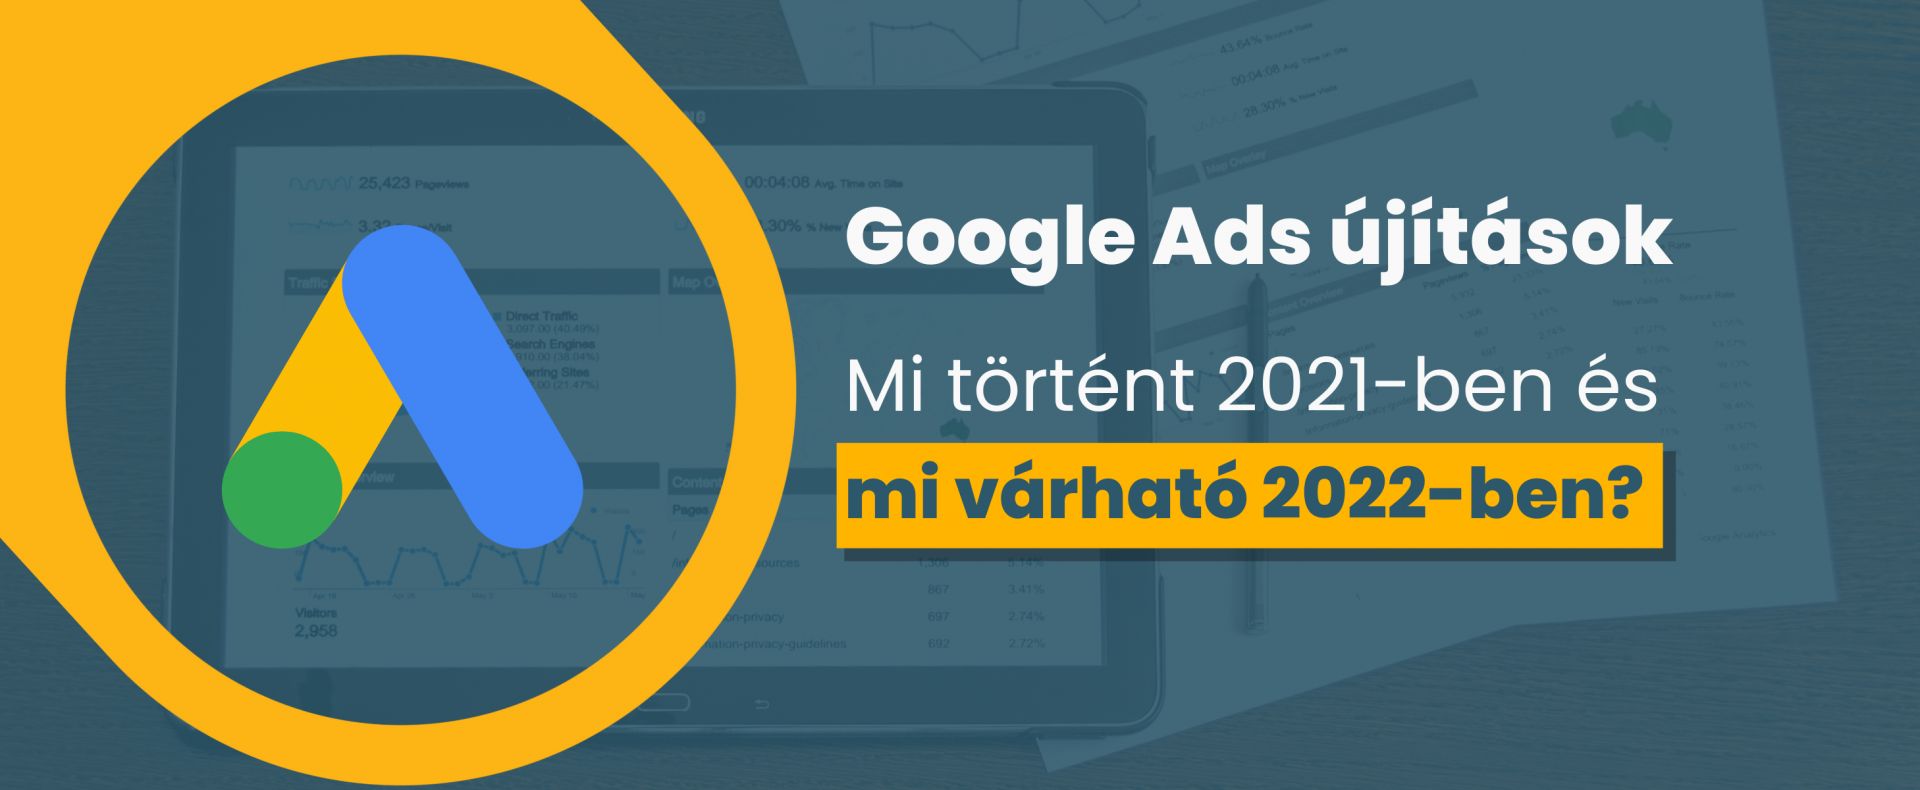 Google Ads újítások - Mi történt 2021-ben és mi várható 2022-ben?